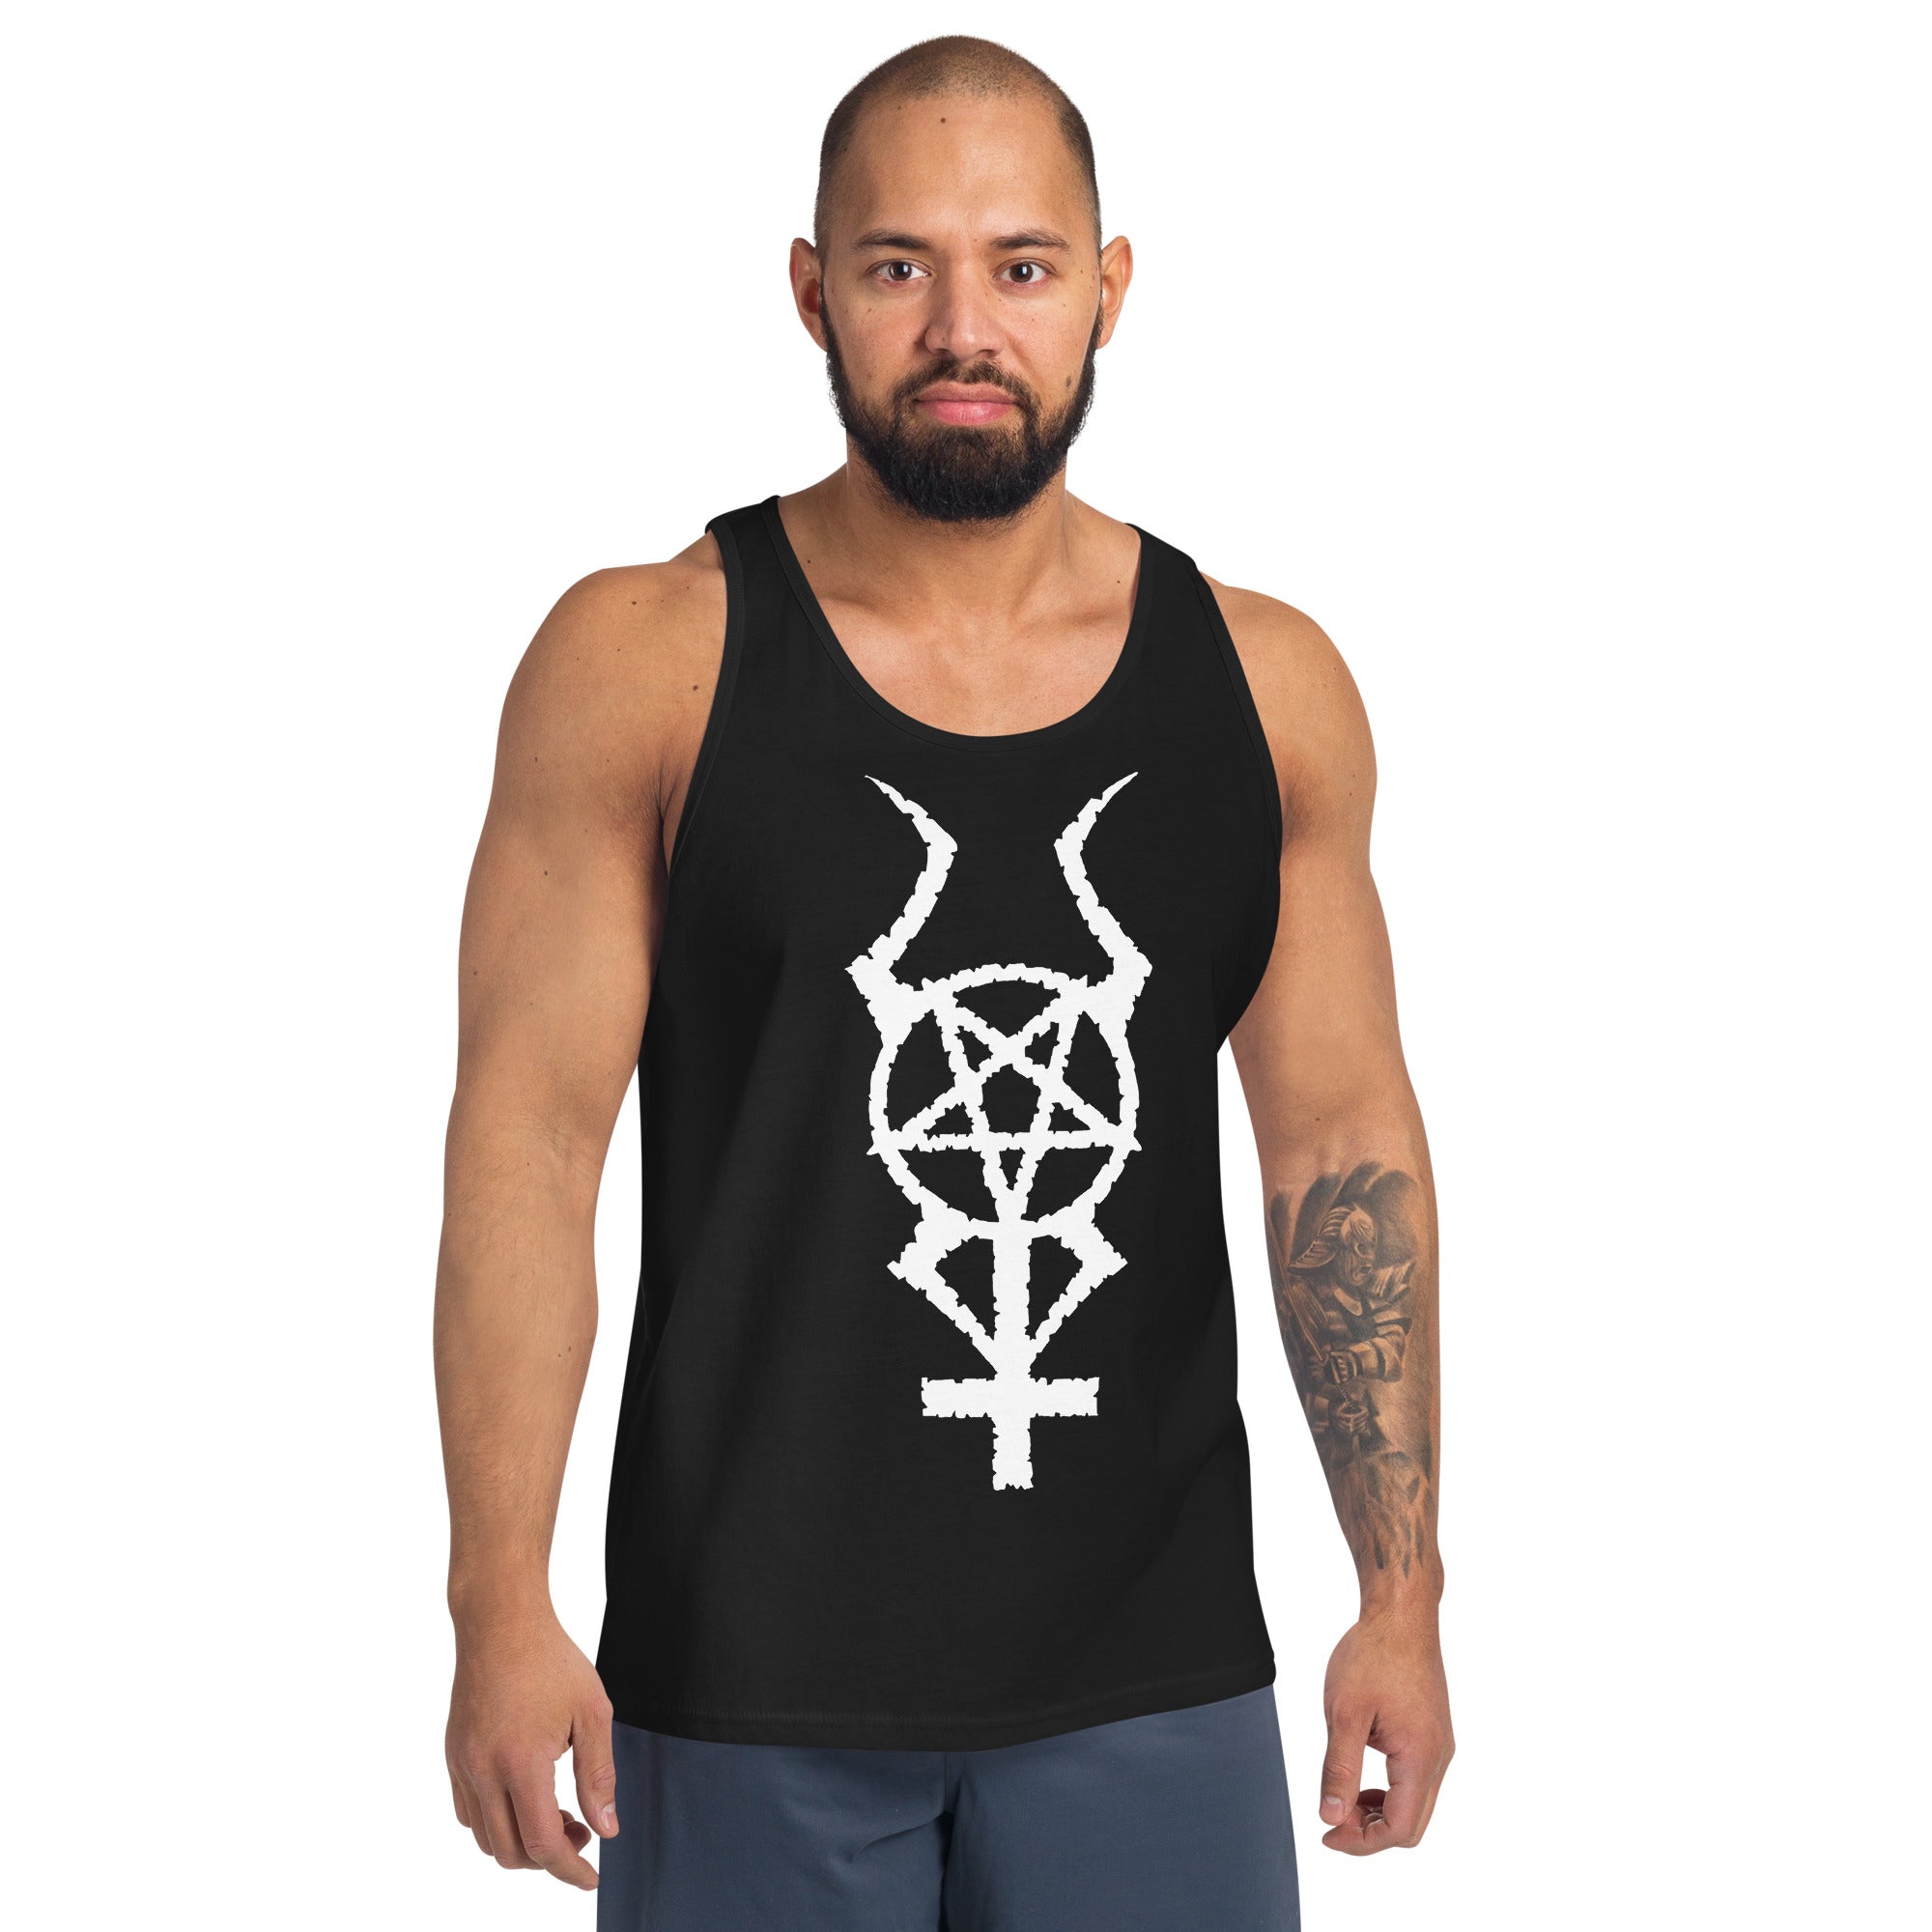 White Horned Pentacross Ritual Pentagram Cross Men's Tank Top - Edge of Life Designs